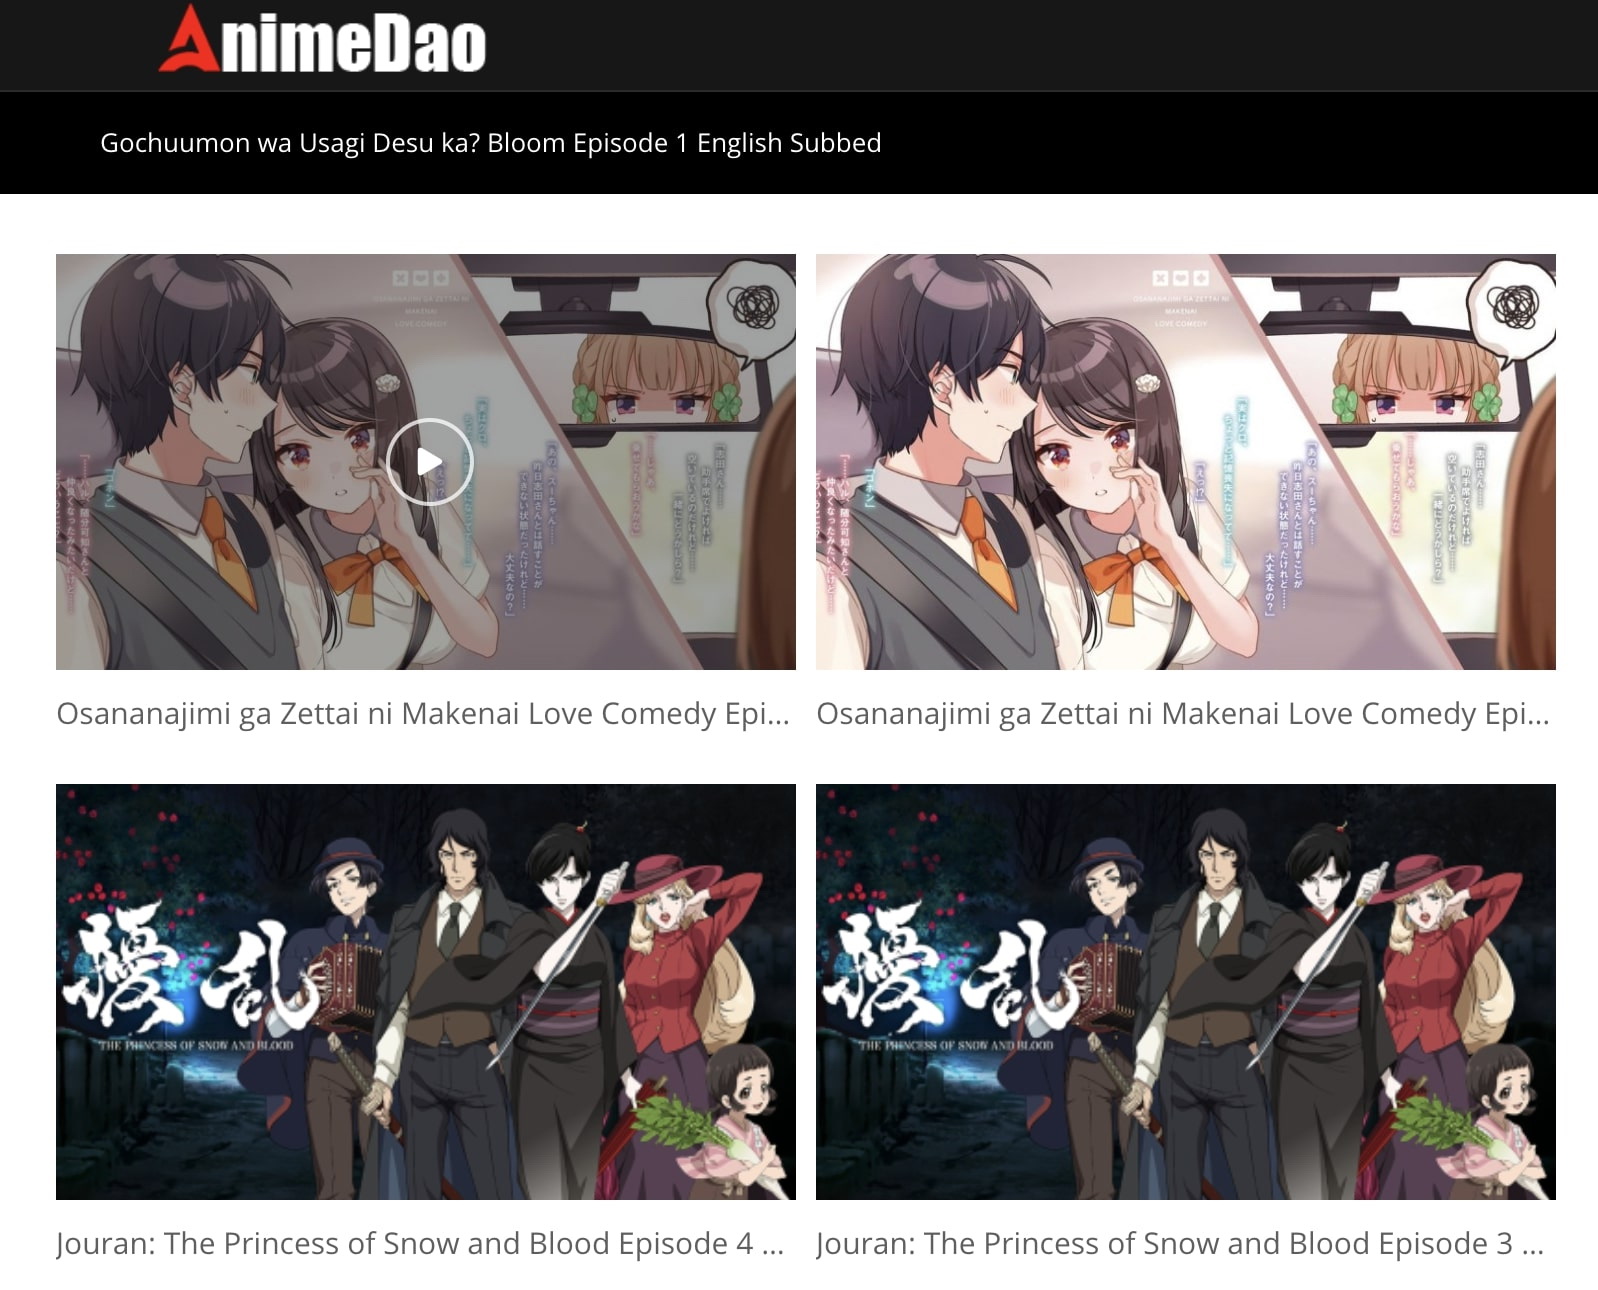 Animedao.to AnimeDao Home =List Login Search Anime i= Latest